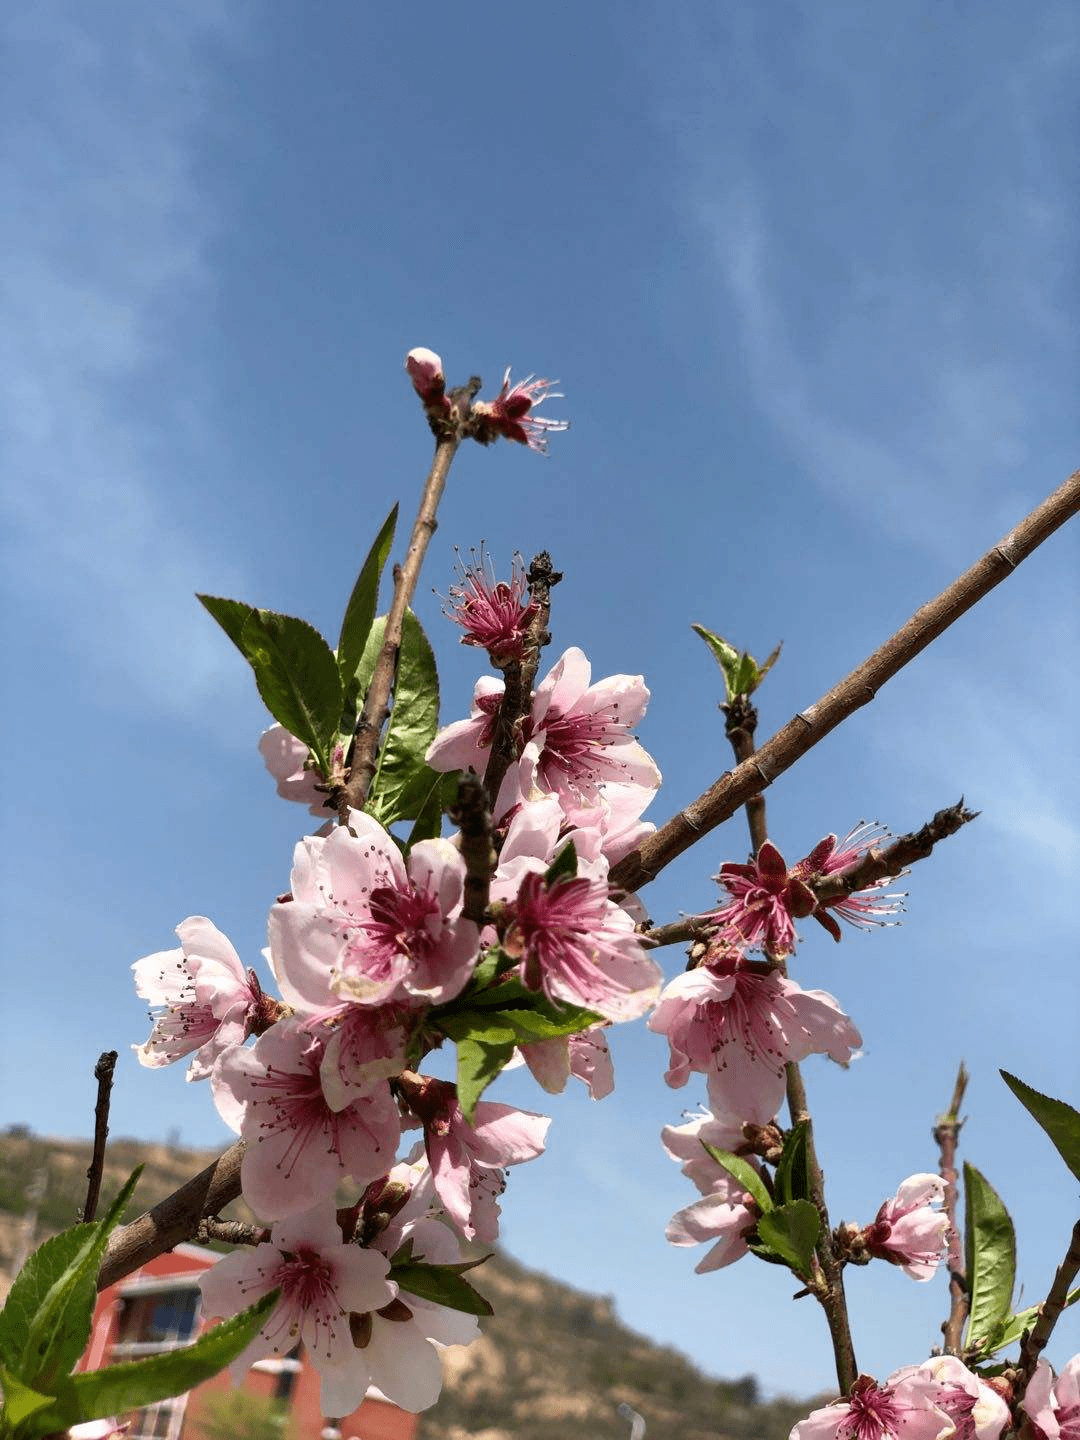 吃桃季节到 这么多种桃子 却和春天的桃花没关系 桃树